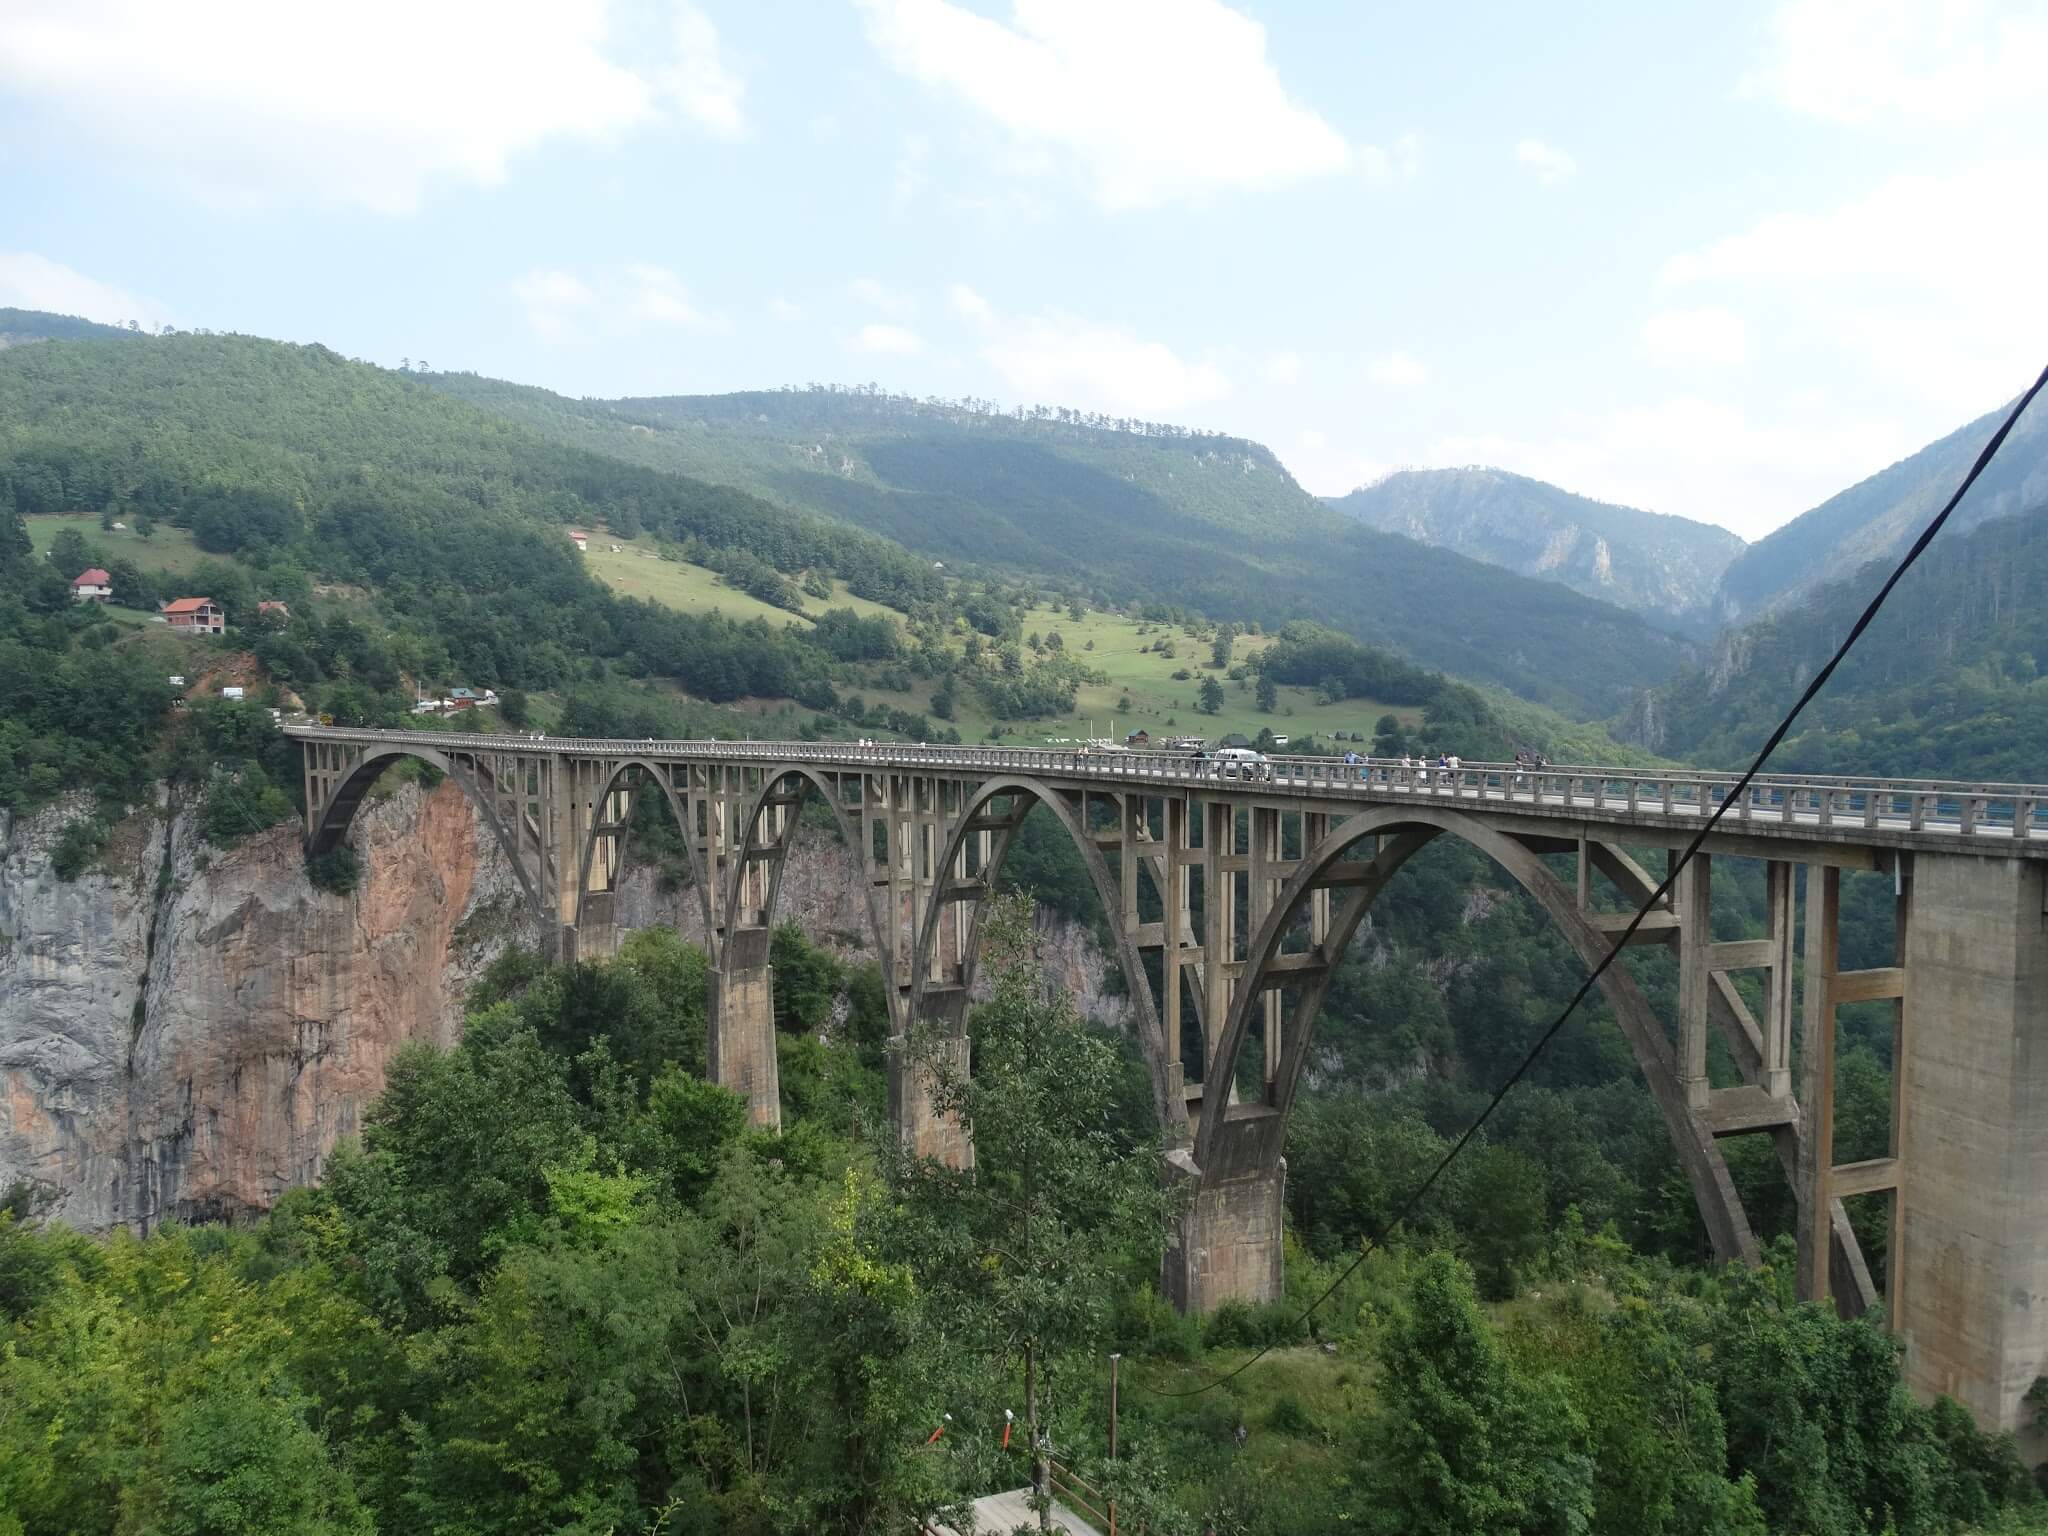 The second biggest bridge in Europe